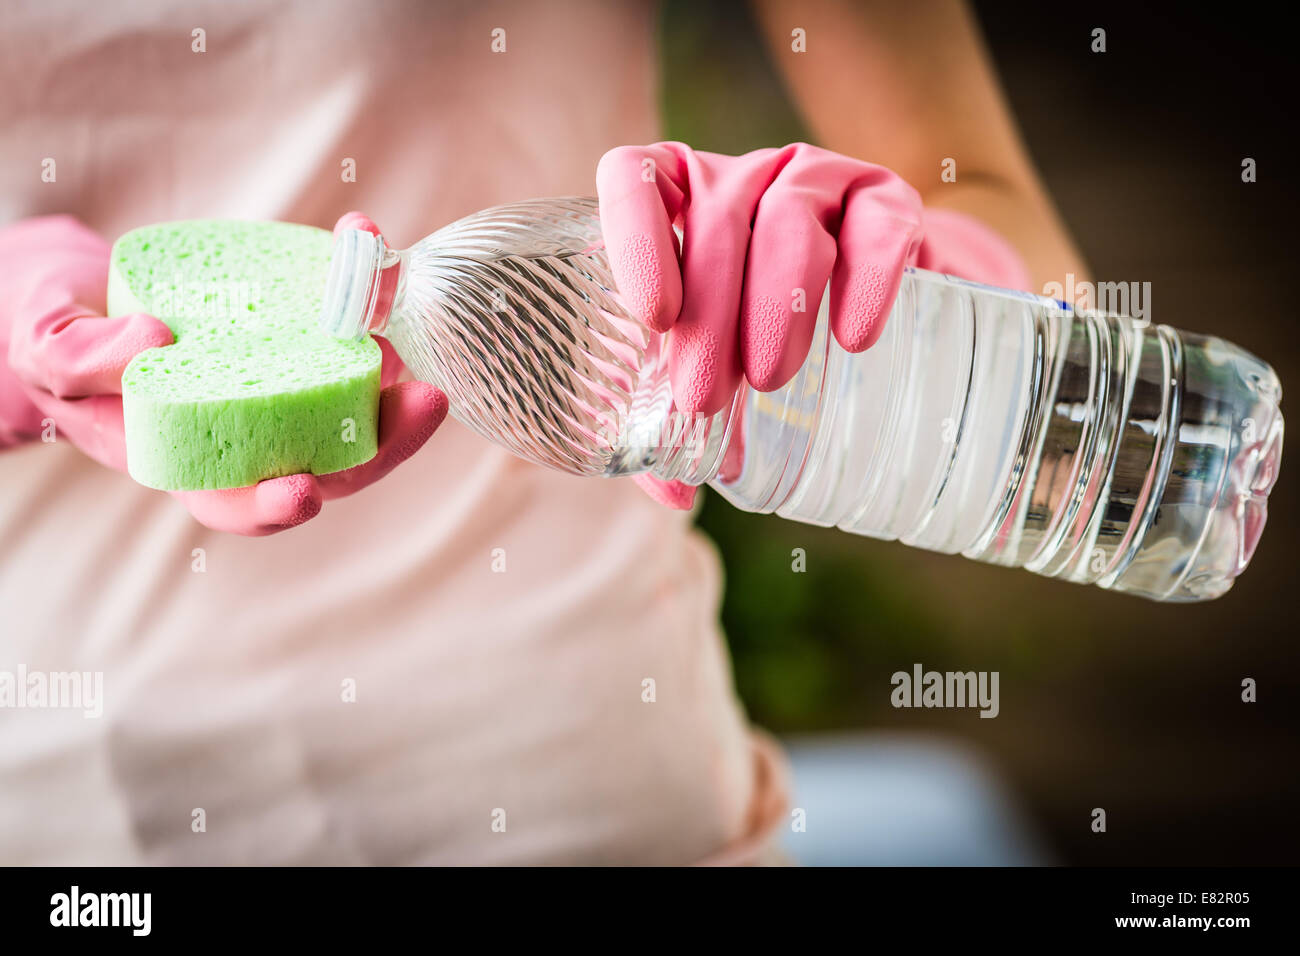 Donna con aceto bianco per pulire. Foto Stock